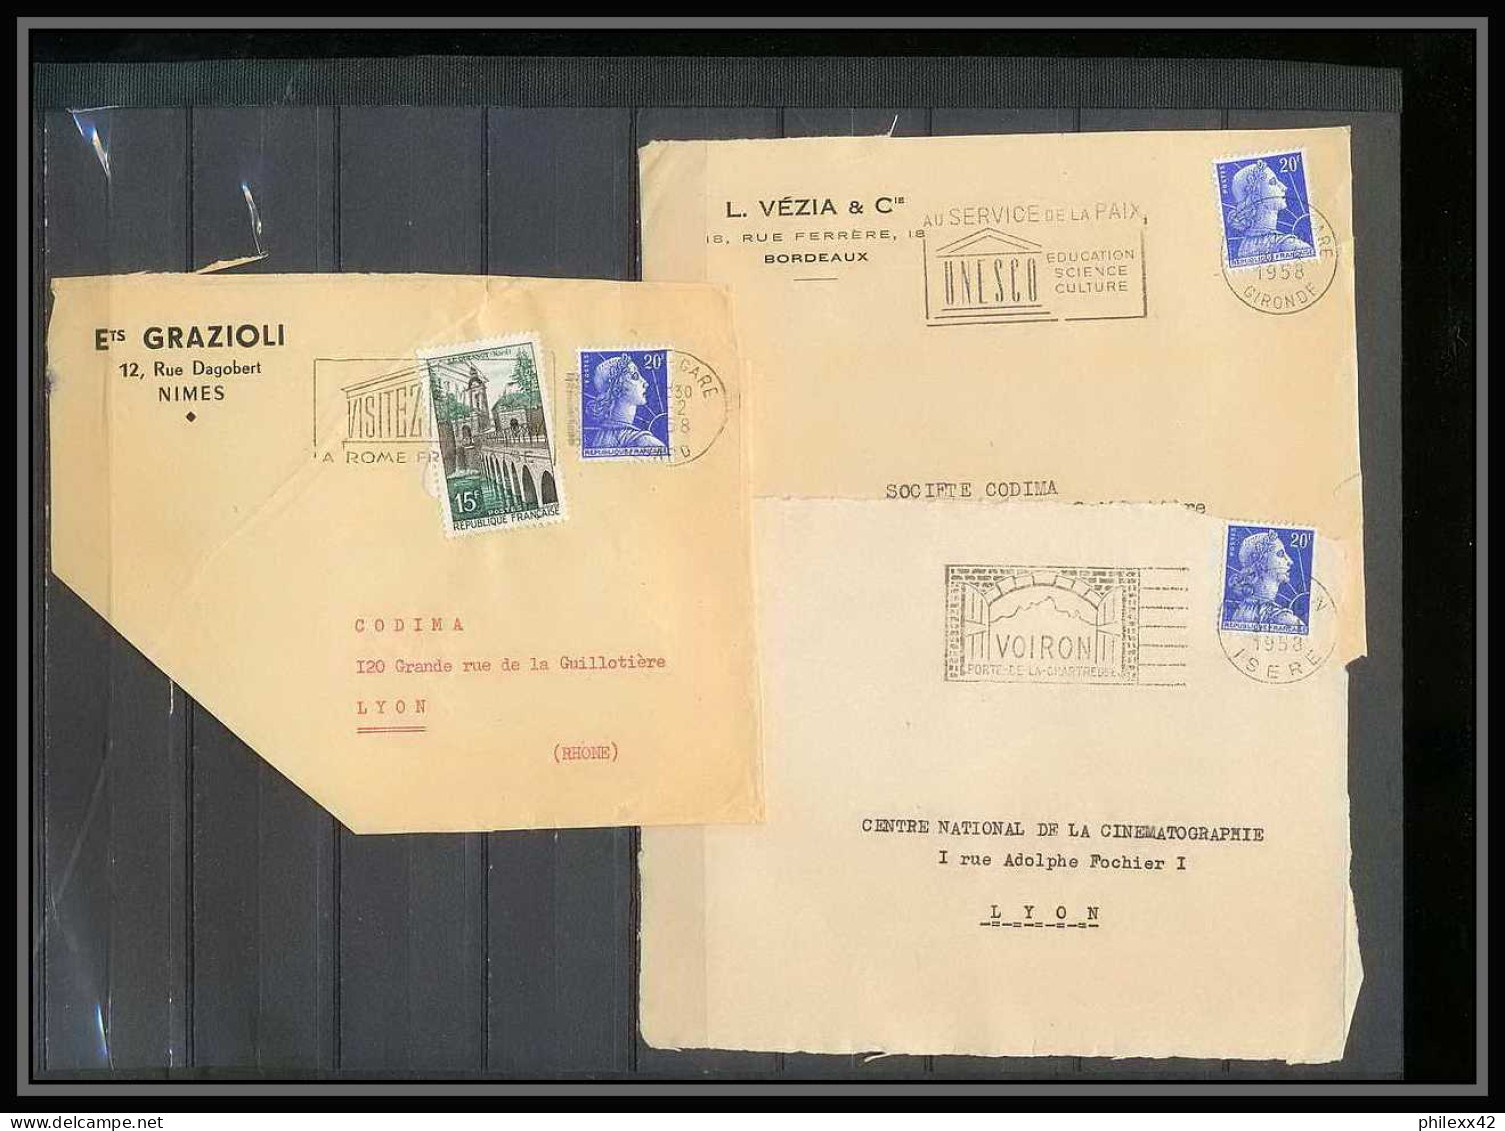 13066 Lot de 84 lettres N°1011 Marianne de Muller (lettre enveloppe courrier) Voir photos